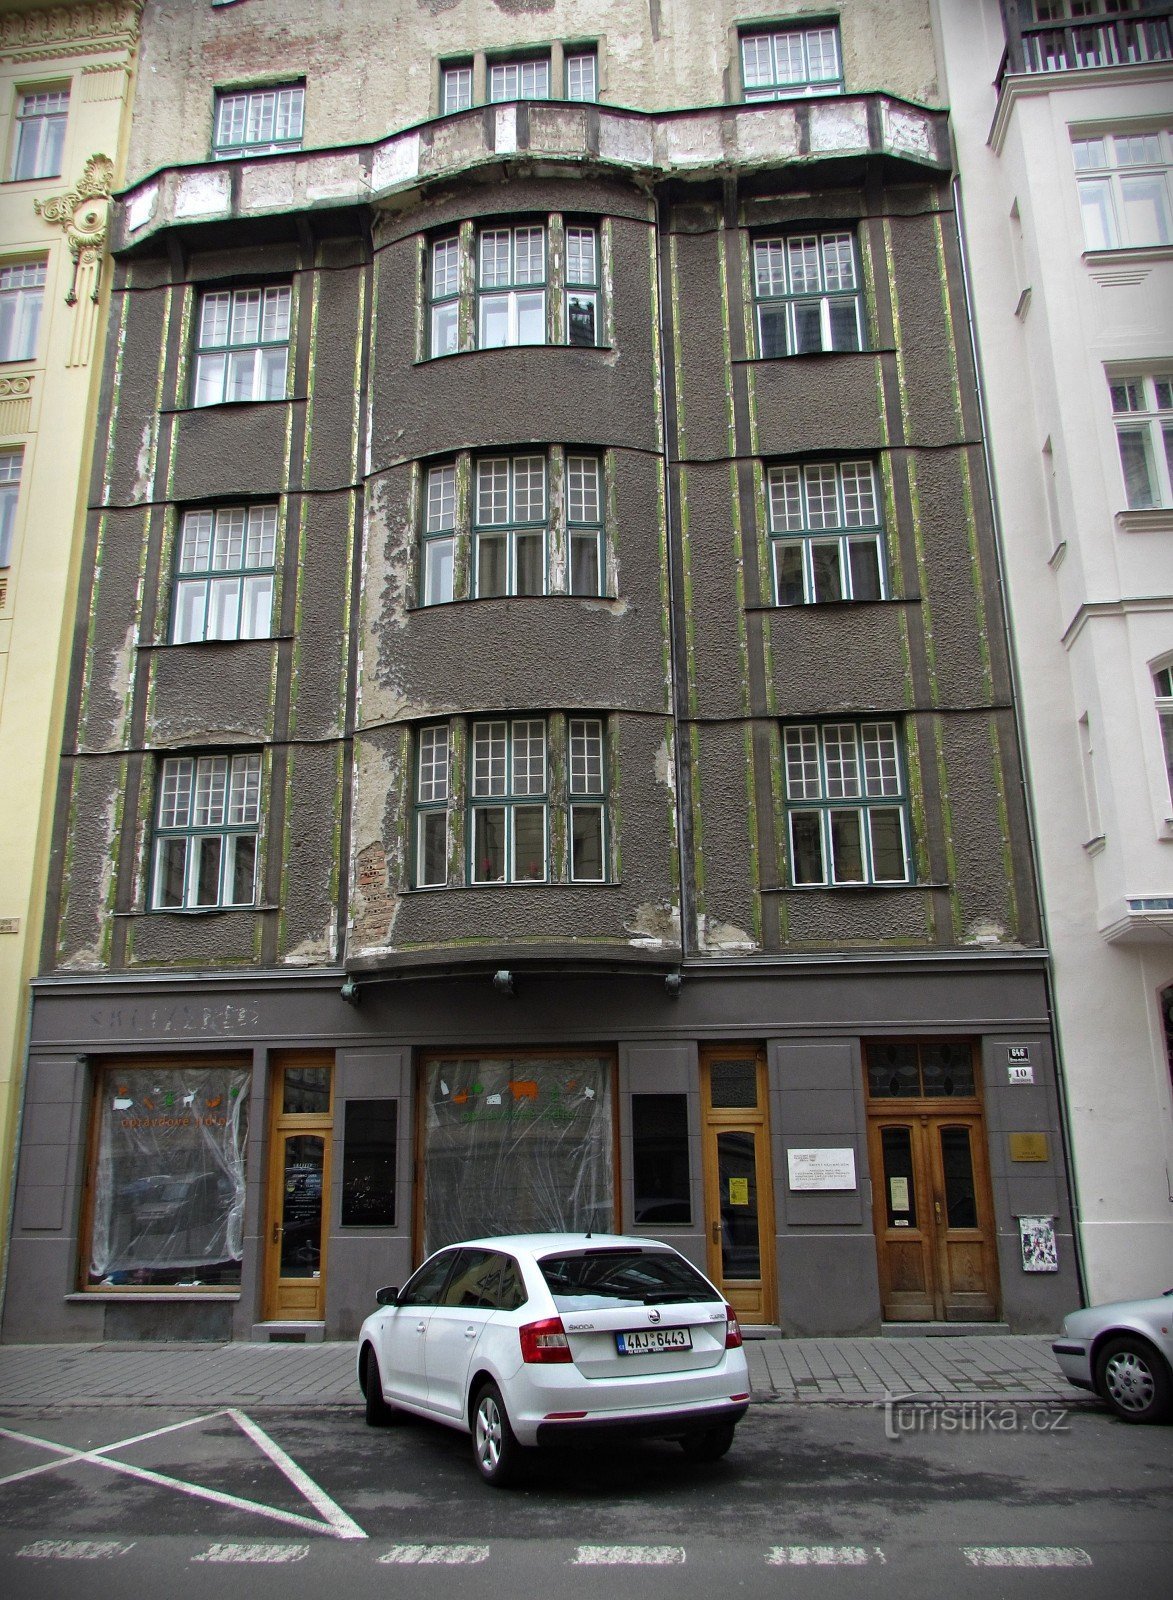 布尔诺 - 尤尔科维奇的房子